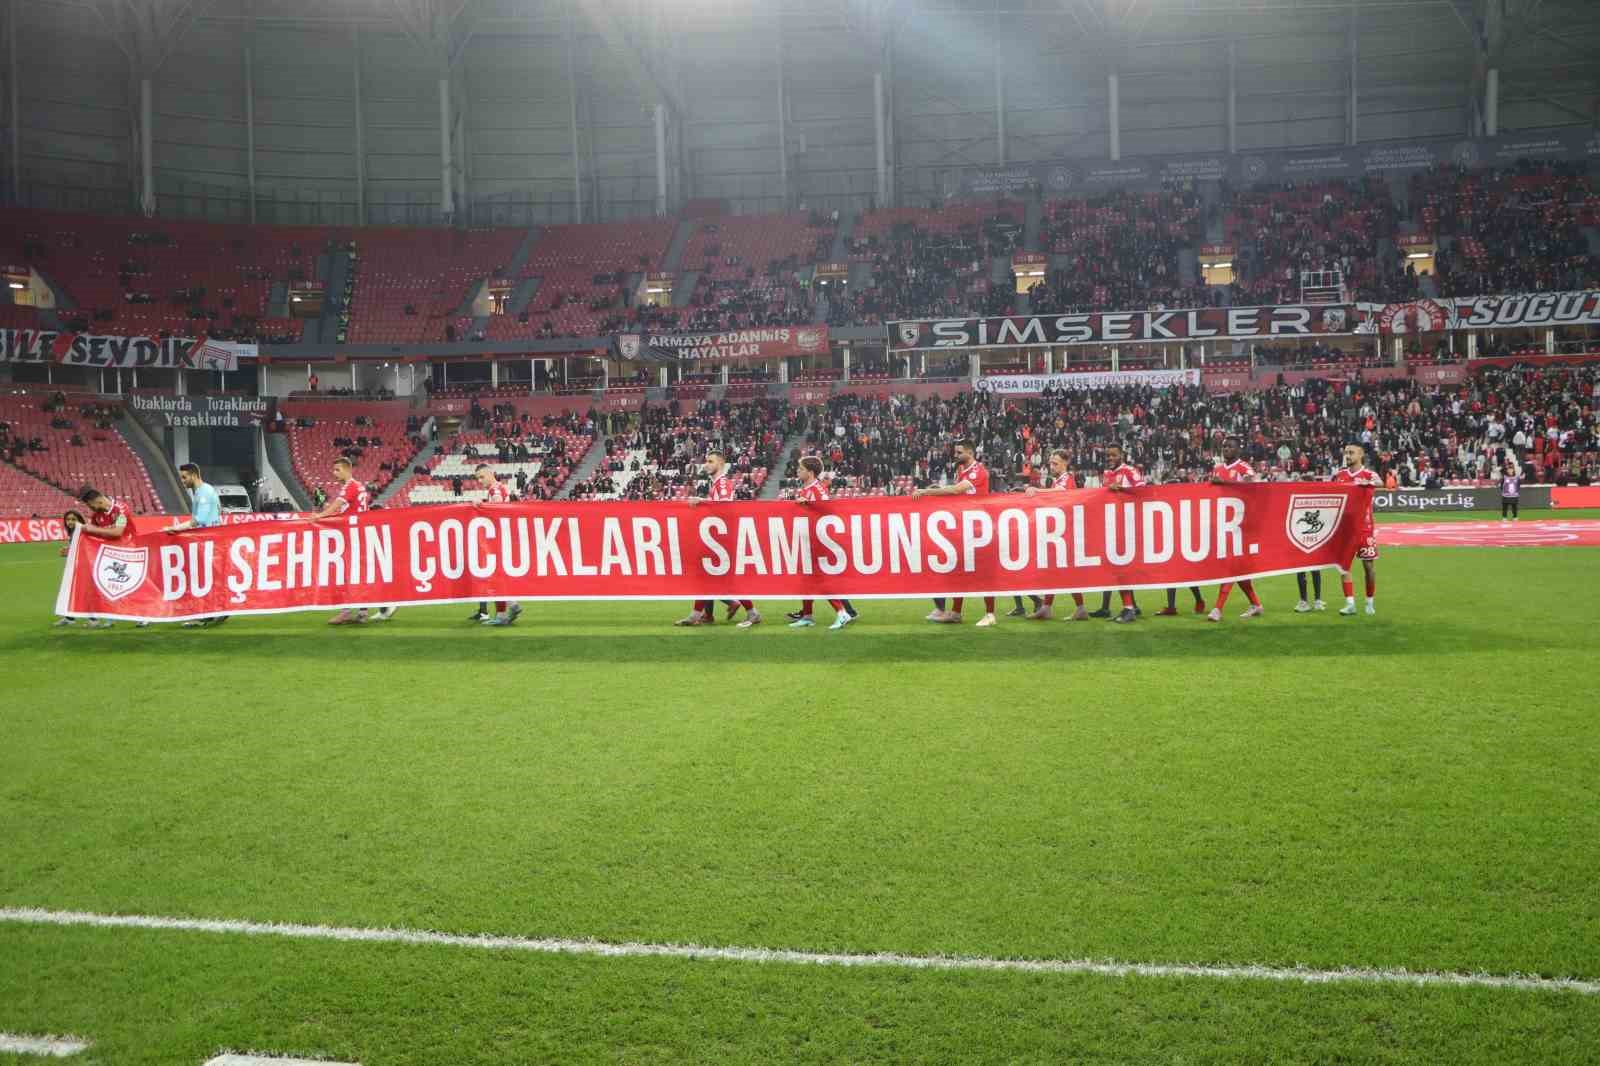 İki dönem transfer yasağı alan Samsunspor, bilet fiyatlarını yarıya indirdi
